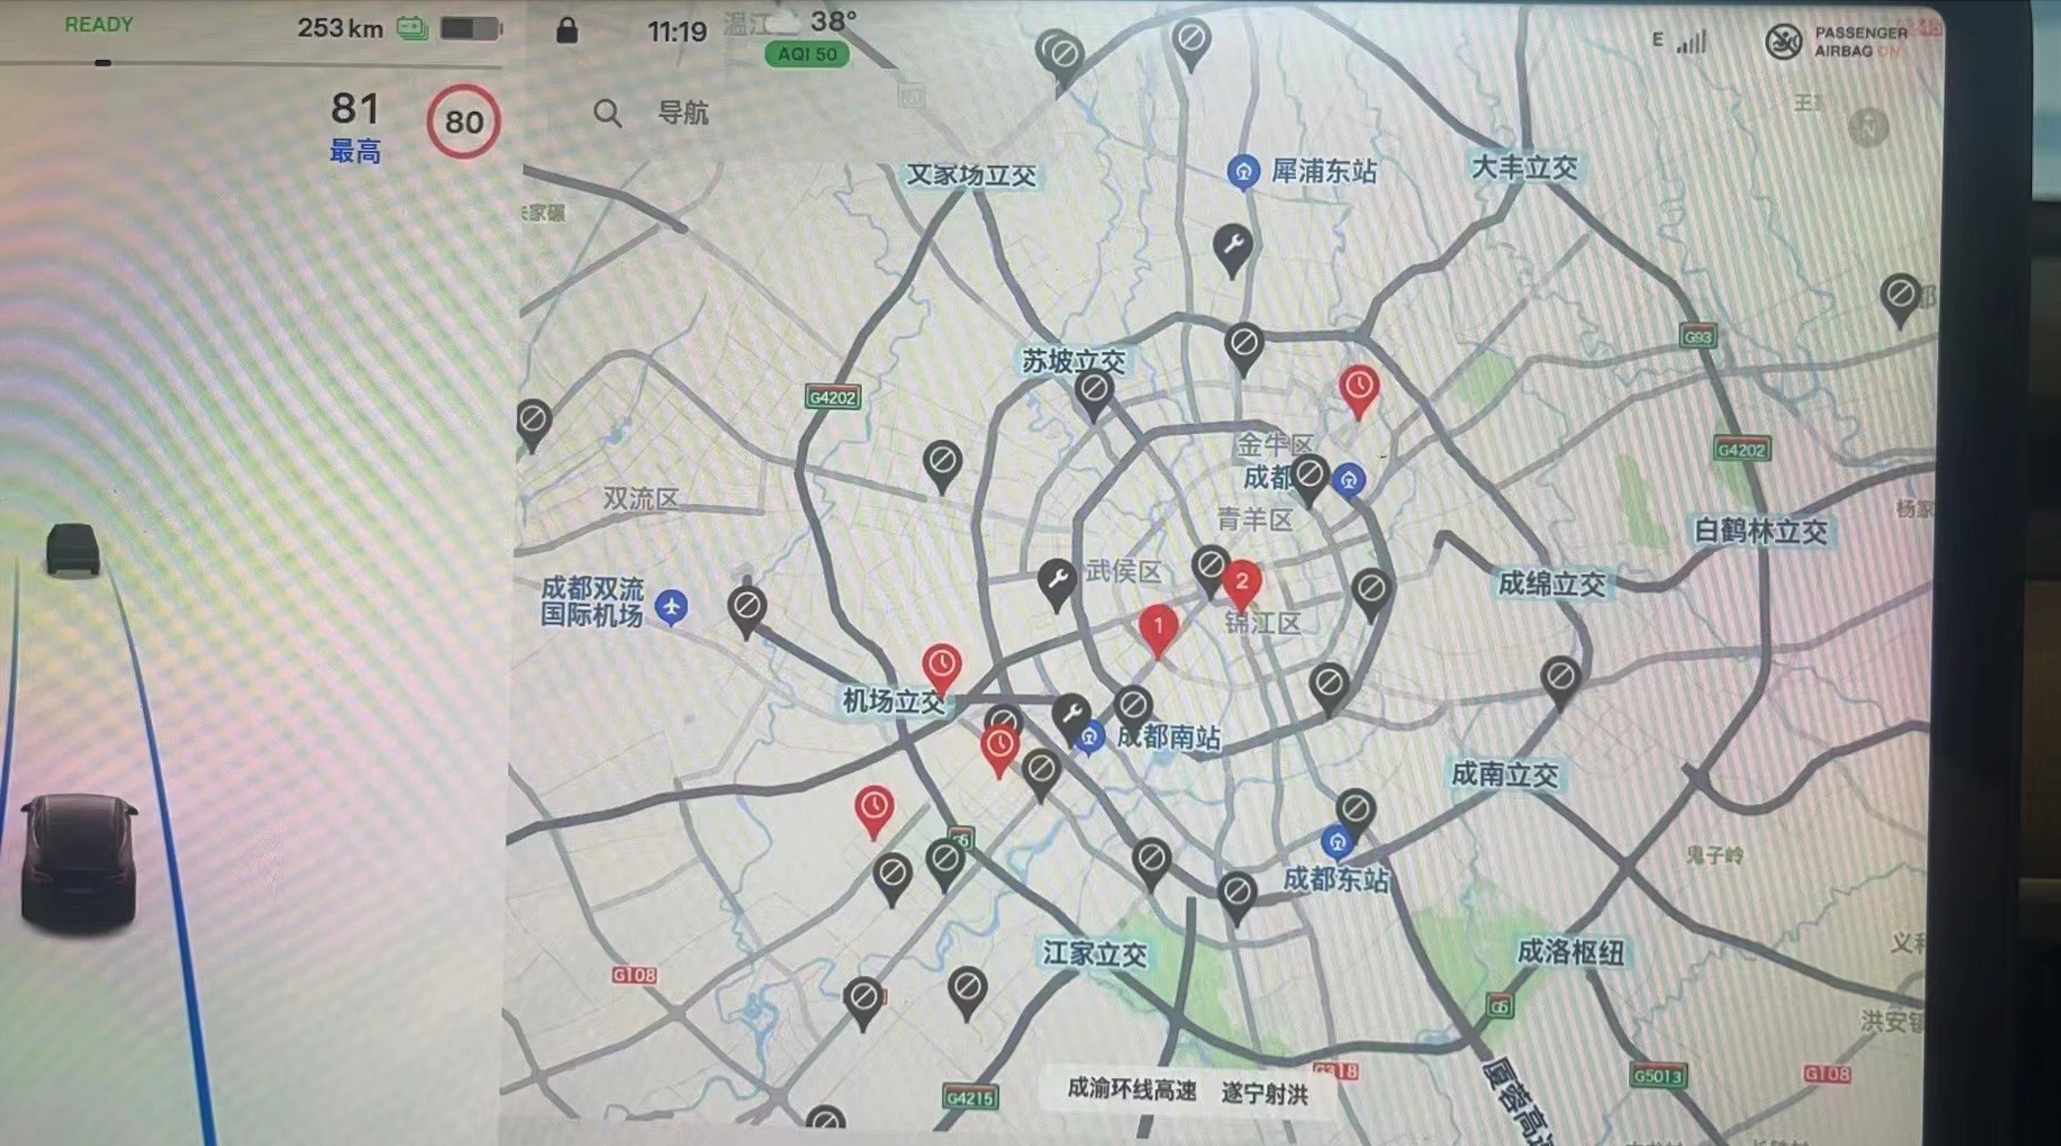 عکسی از صفحه نمایش خودروی تسلا که تنها دو مورد از 31 ایستگاه سوپرشارژر تسلا در نزدیکی آن را نشان می دهد موجود است.